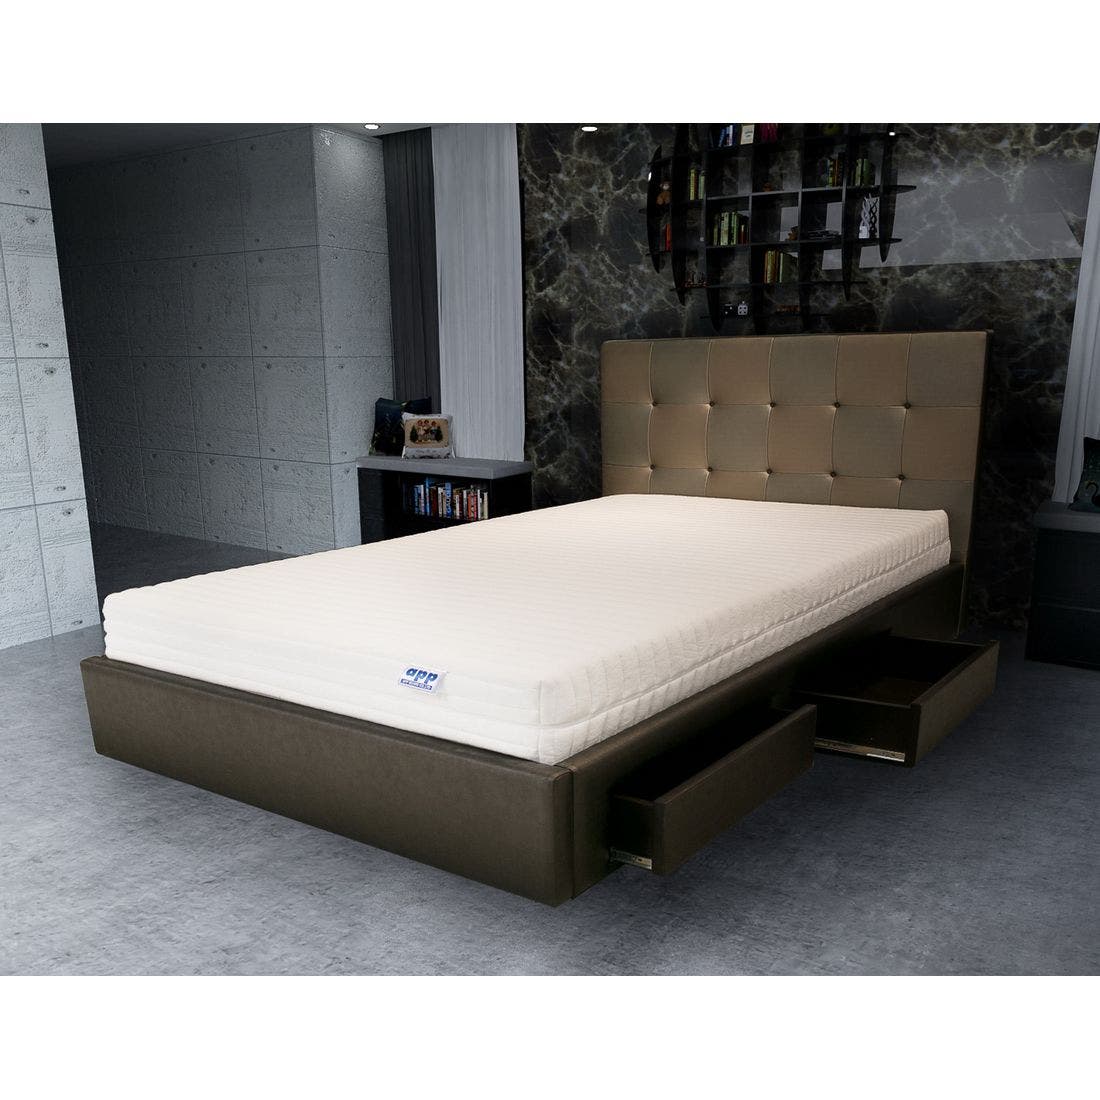 39001631-mattress-bedding-mattresses-latex-mattresses-31